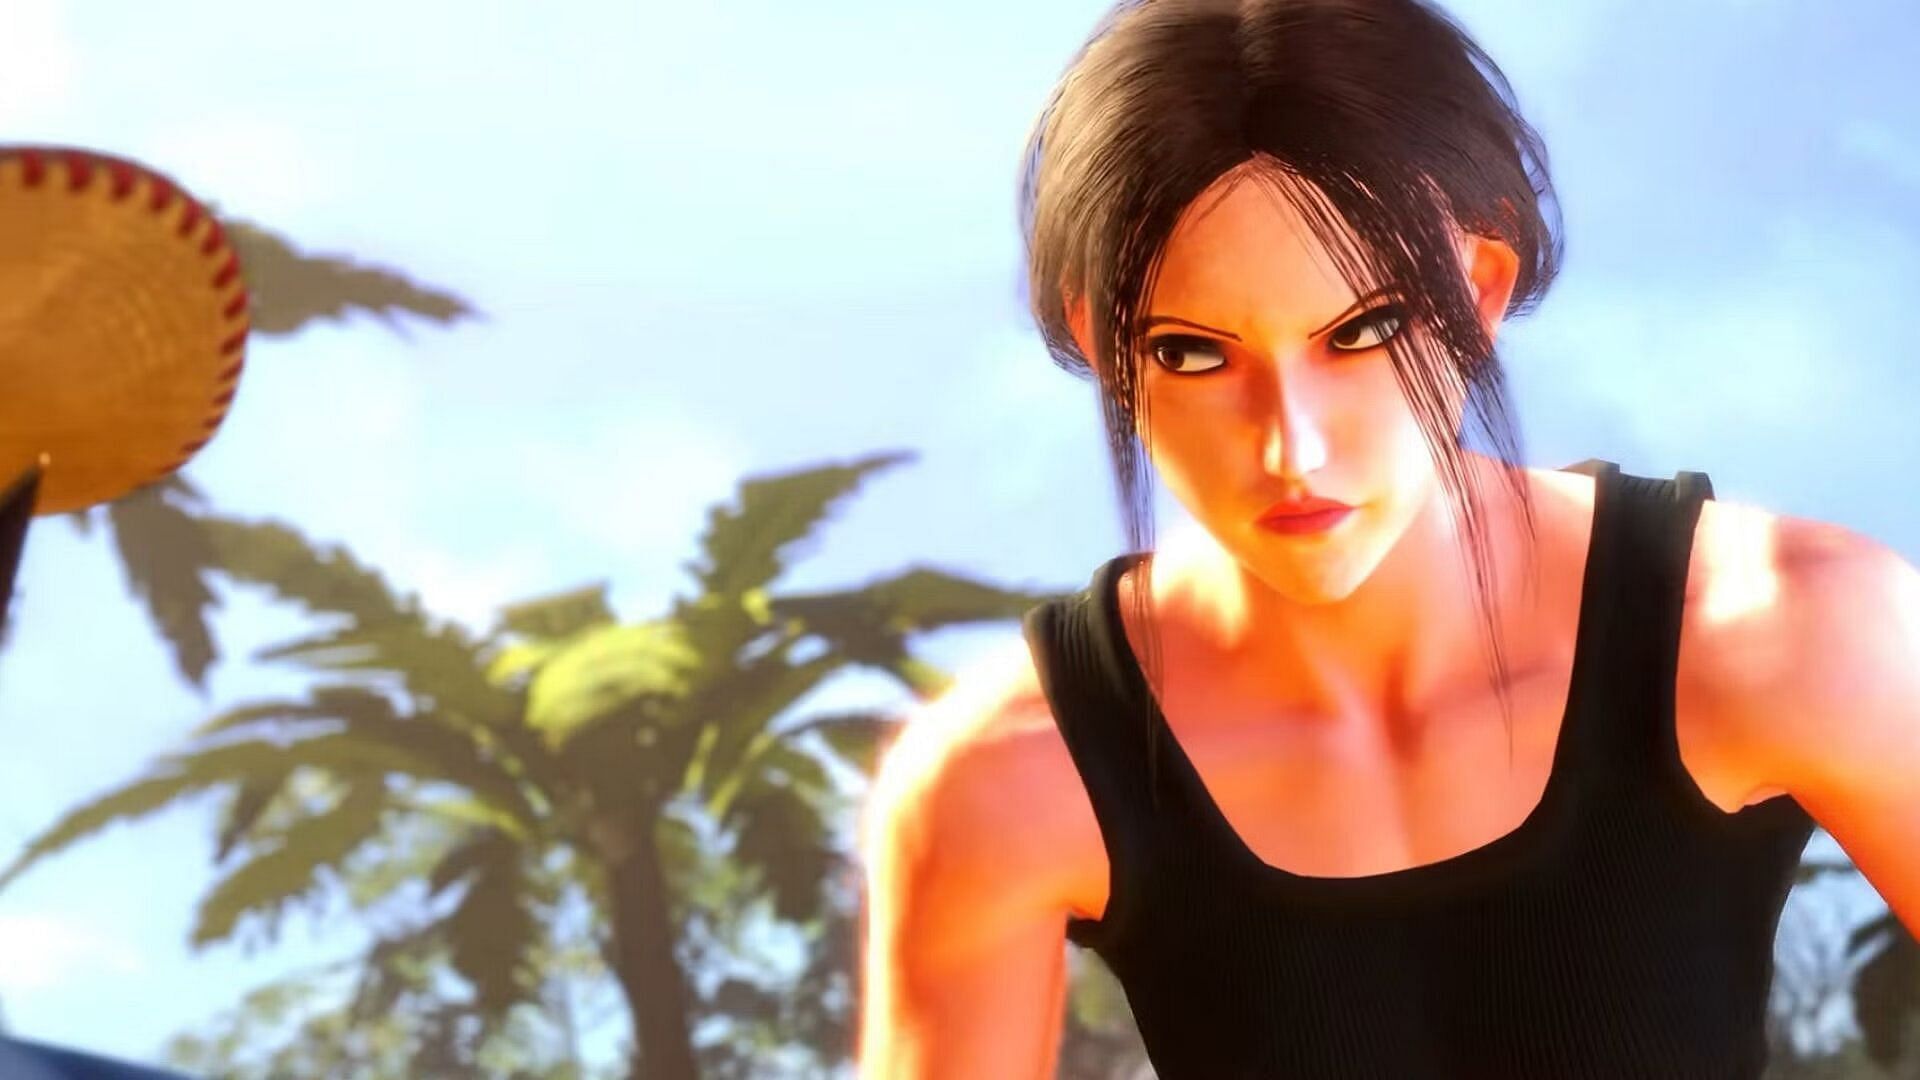 Lara Croft in Street Fighter 6 (Image via Capcom)